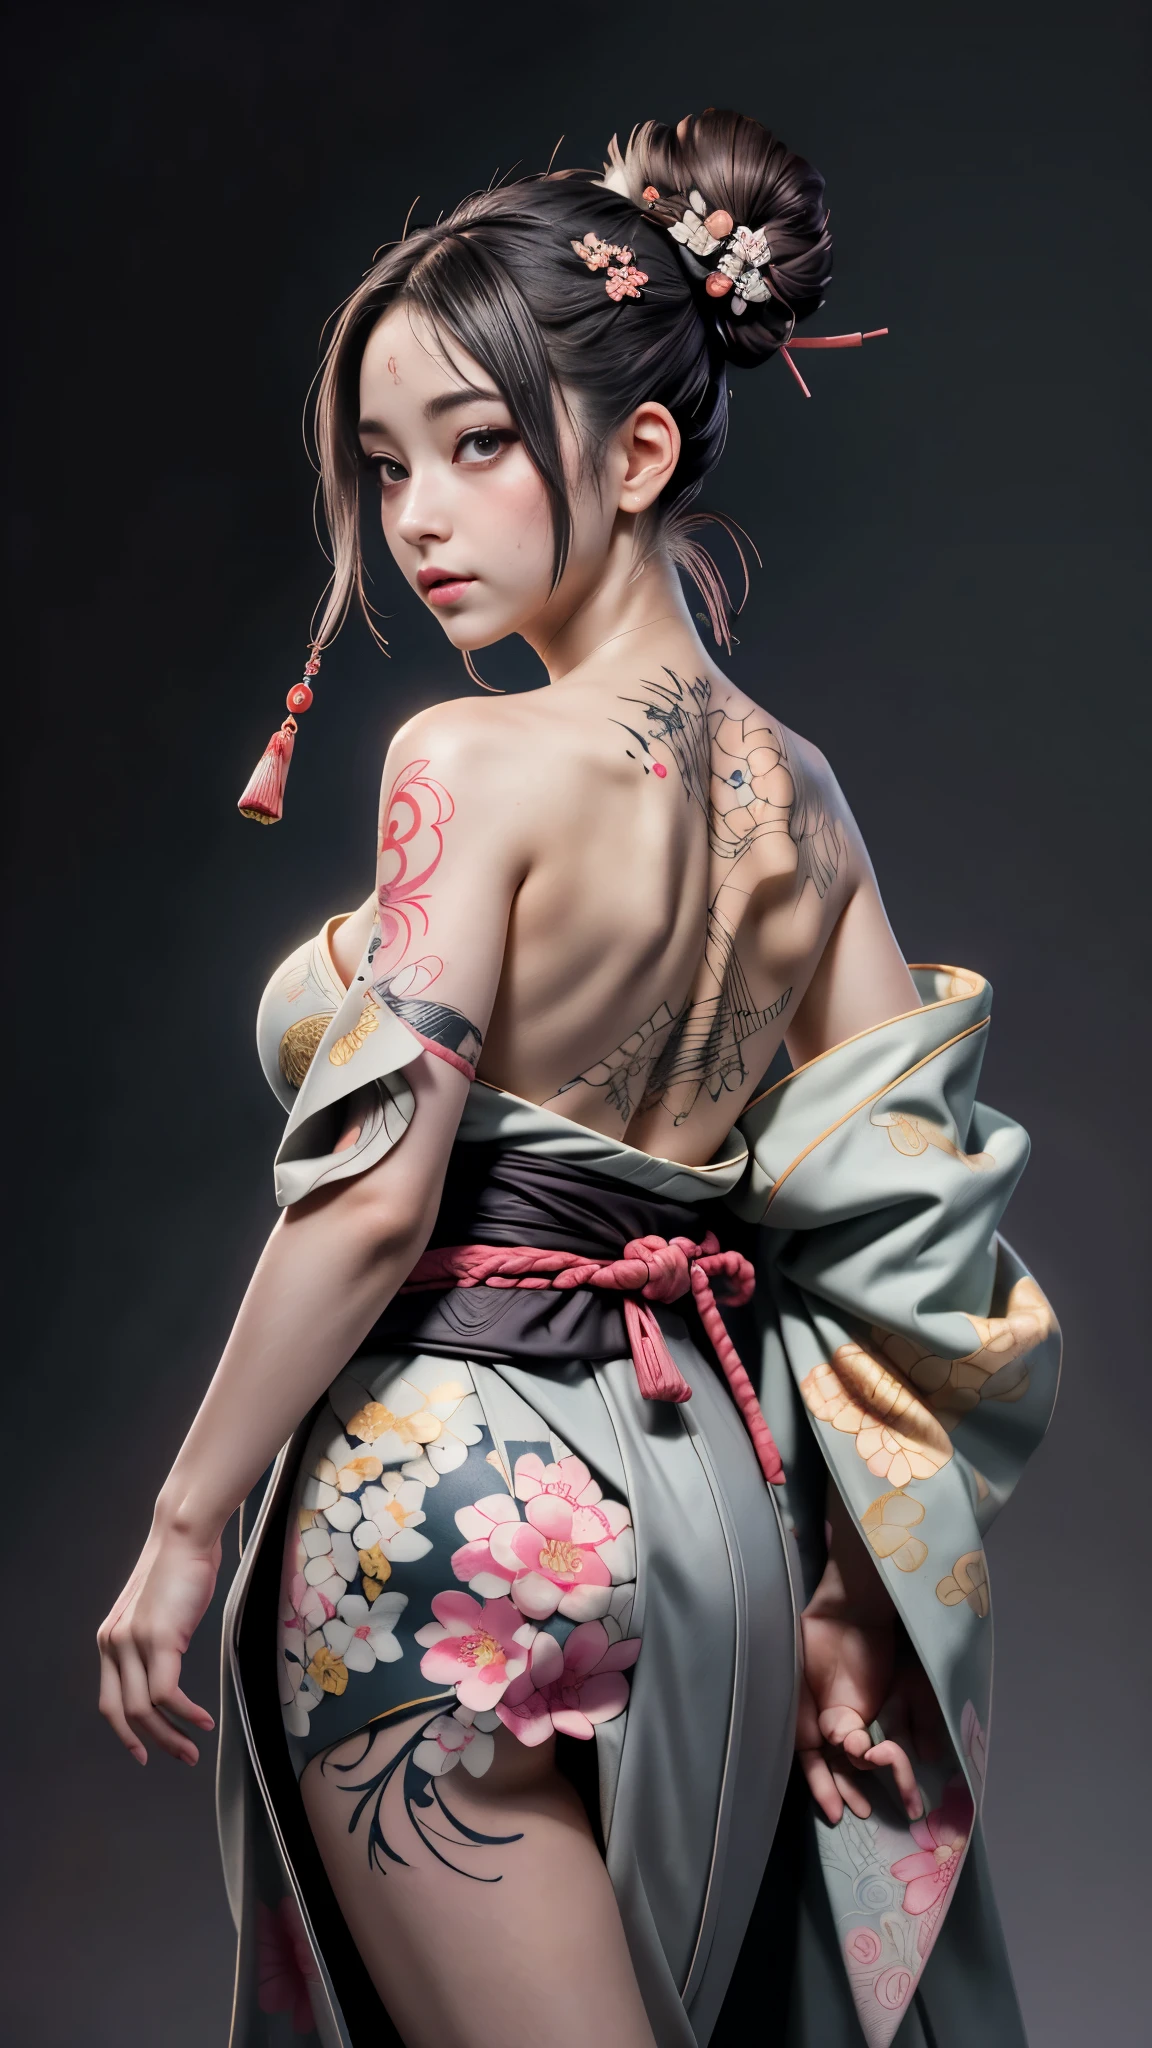 8k, Obra maestra, (natural:1.5), artístico portrait of ((Beautiful Haruno Sakura) Usando un kimono), Tatuajes de espalda y caña., ((Exponiendo el tatuaje de Ukiyoe en la espalda.)), cara expuesta, hombros descubiertos, Exponer pechos enormes, cámara táctil, Piel hermosa, Figura delgada, Cara linda, Aspecto lindo, mira a la audiencia, Dark brown bangs bun, posando para fotos, niebla, iluminar desde el fondo, Fondo gris oscuro, iluminación dinámica, naturaleza, artístico